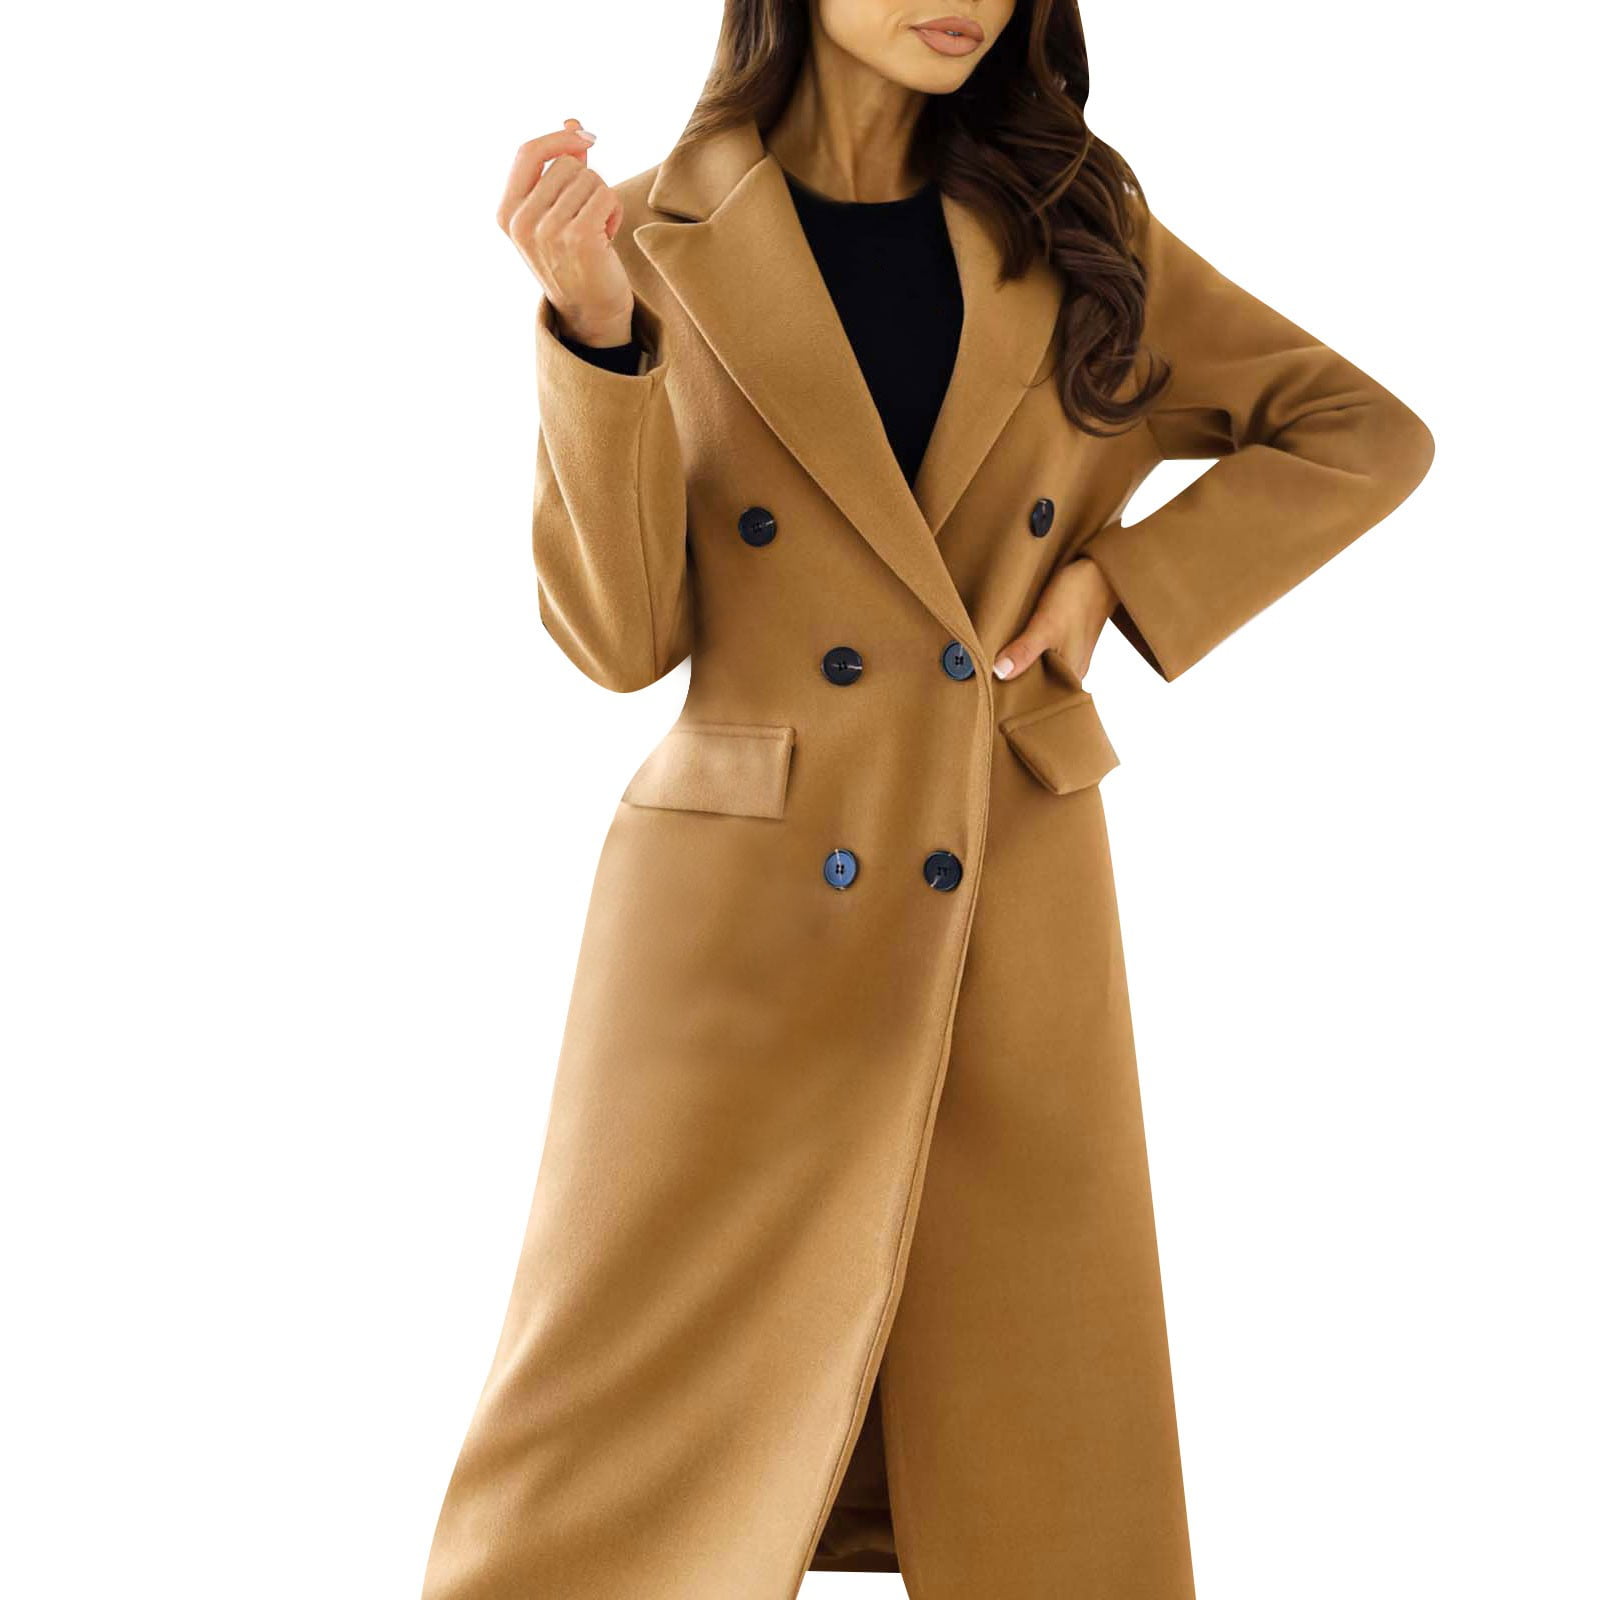 Tooayk Winter Coats for Women; Jackets for Women; Women's